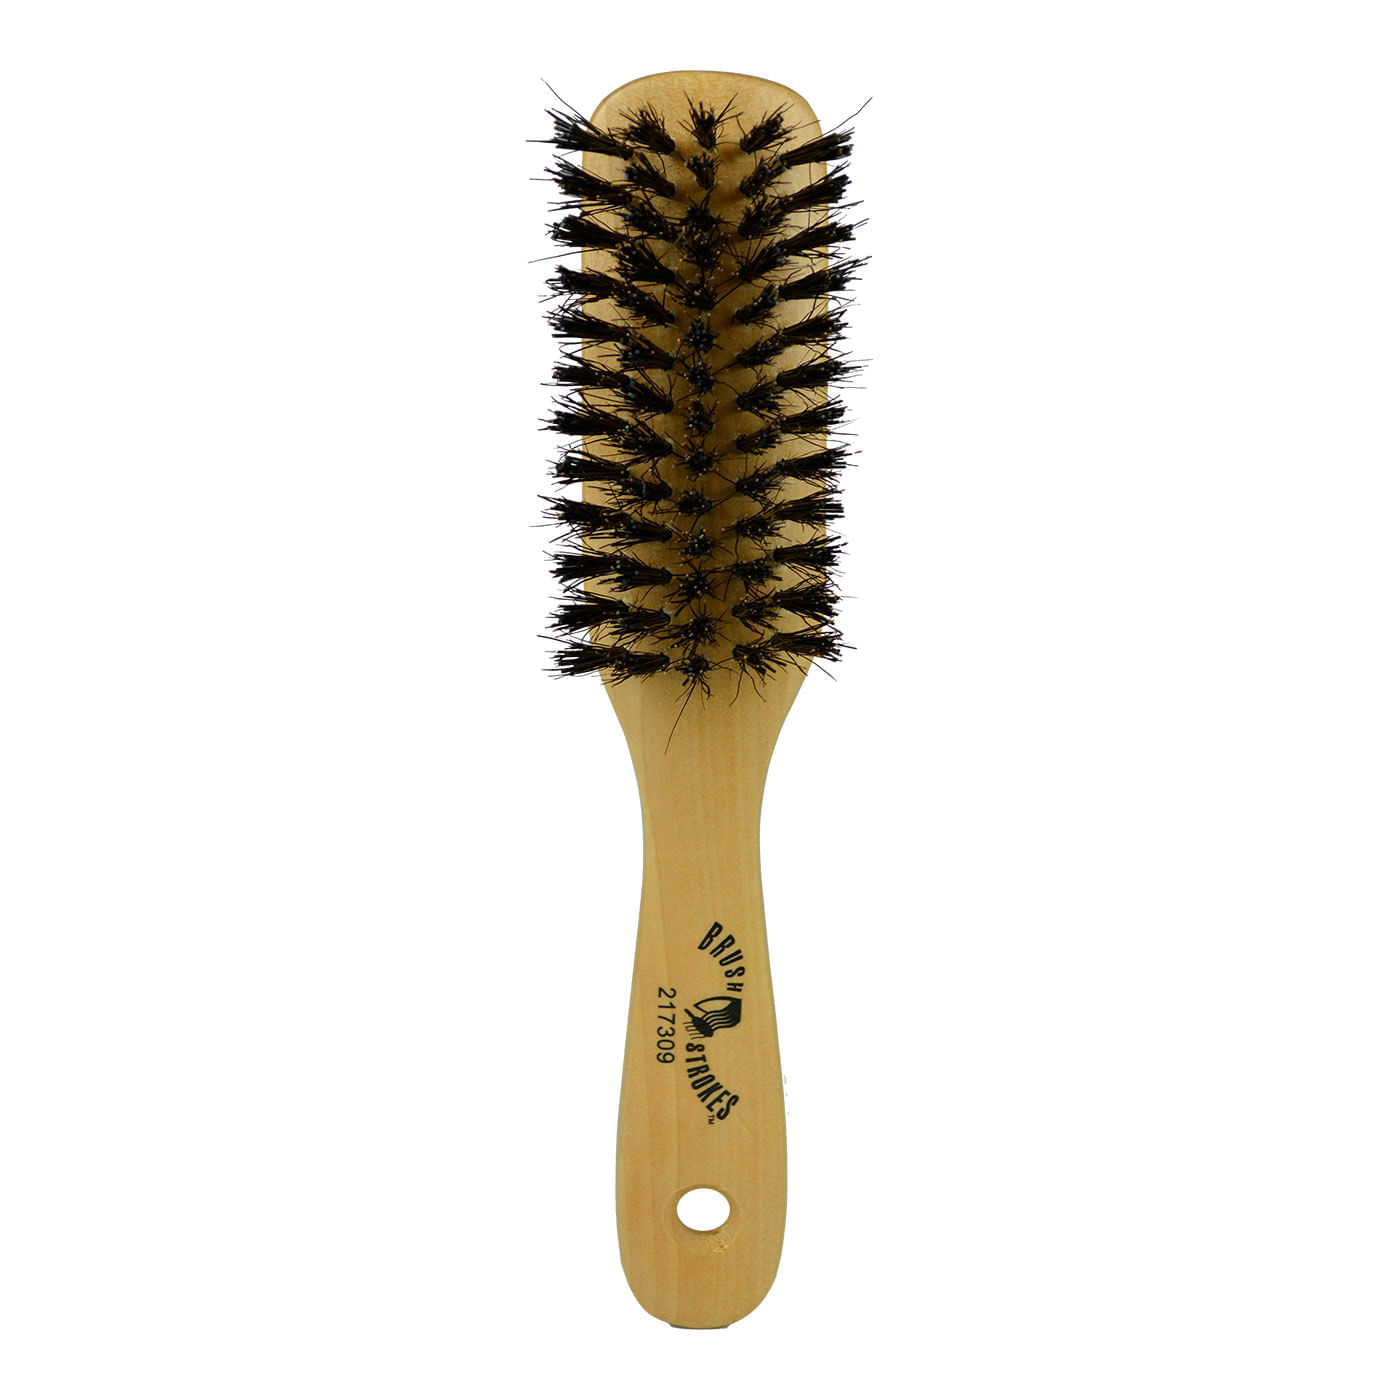 GranNaturals Cepillo de madera con cerdas de madera - Cepillo de pelo  rizado de madera ovalada para desenredar y peinar el cabello de las mujeres